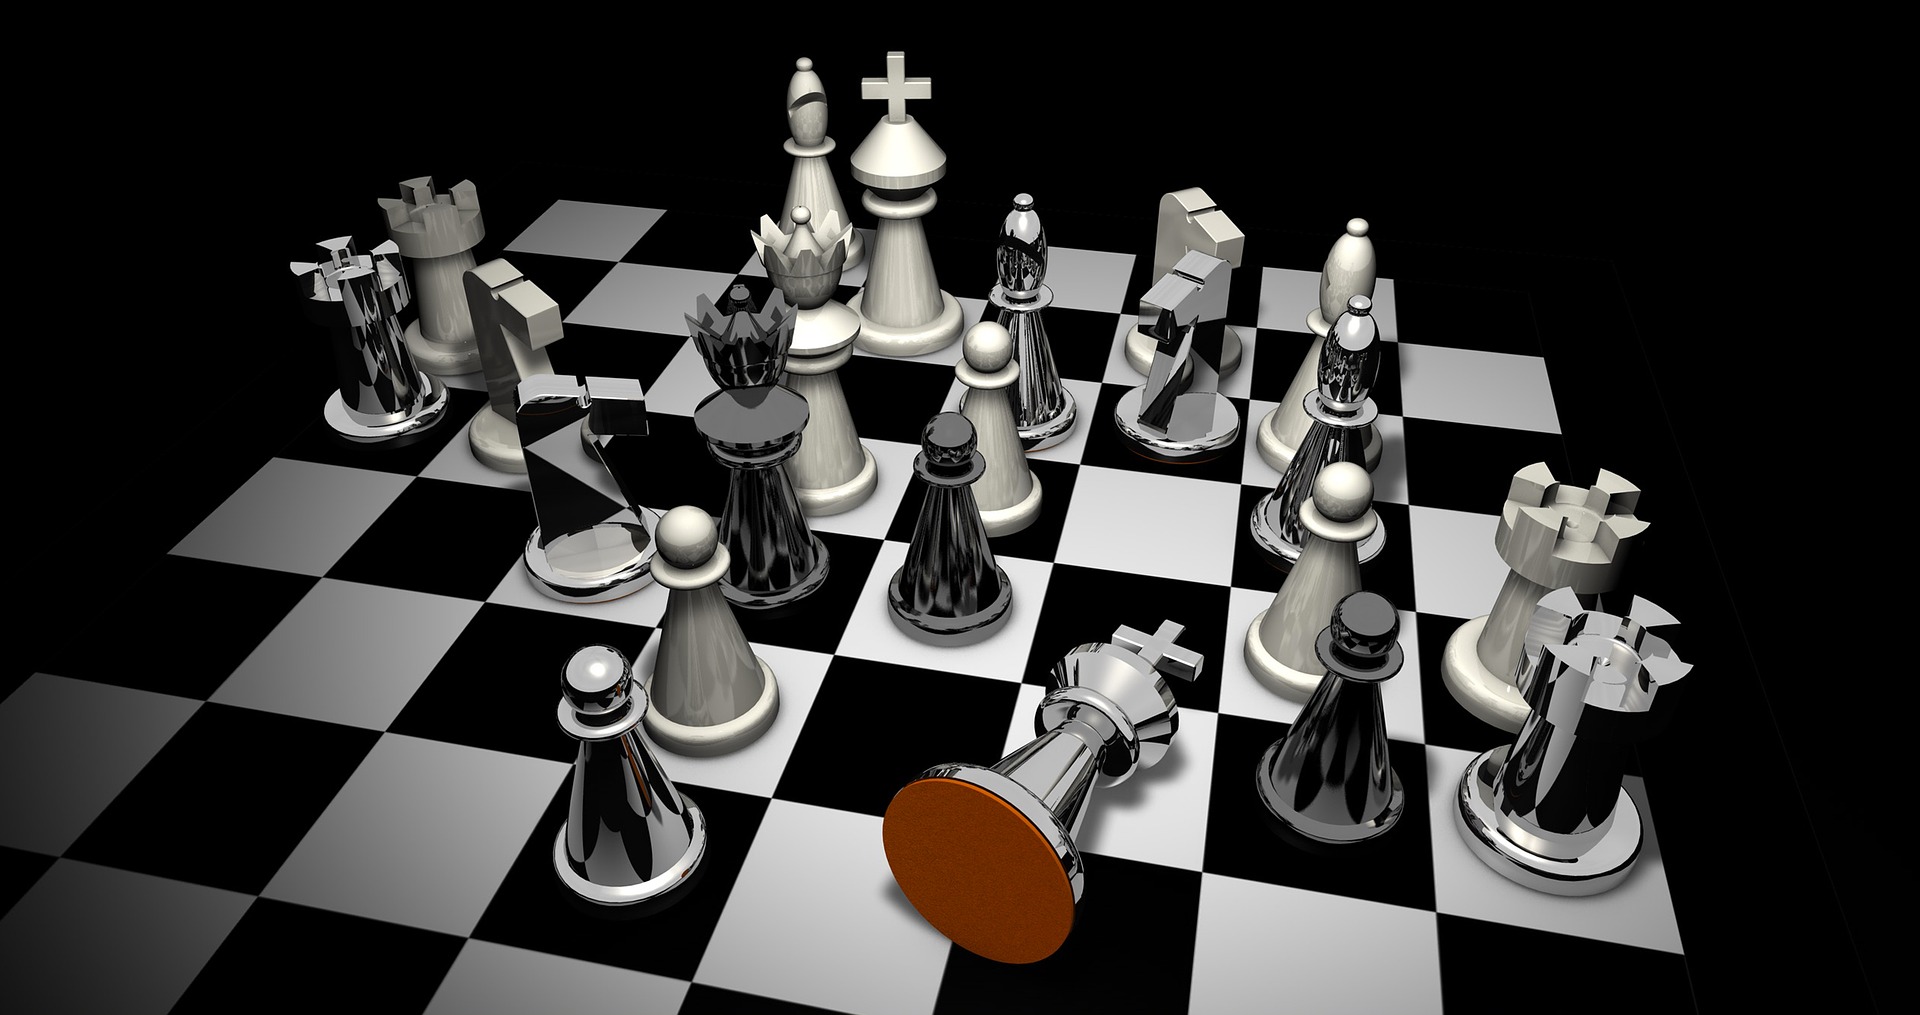 בדומה לשחמט מחדד את המחשבה, צילום אילוסטרציה